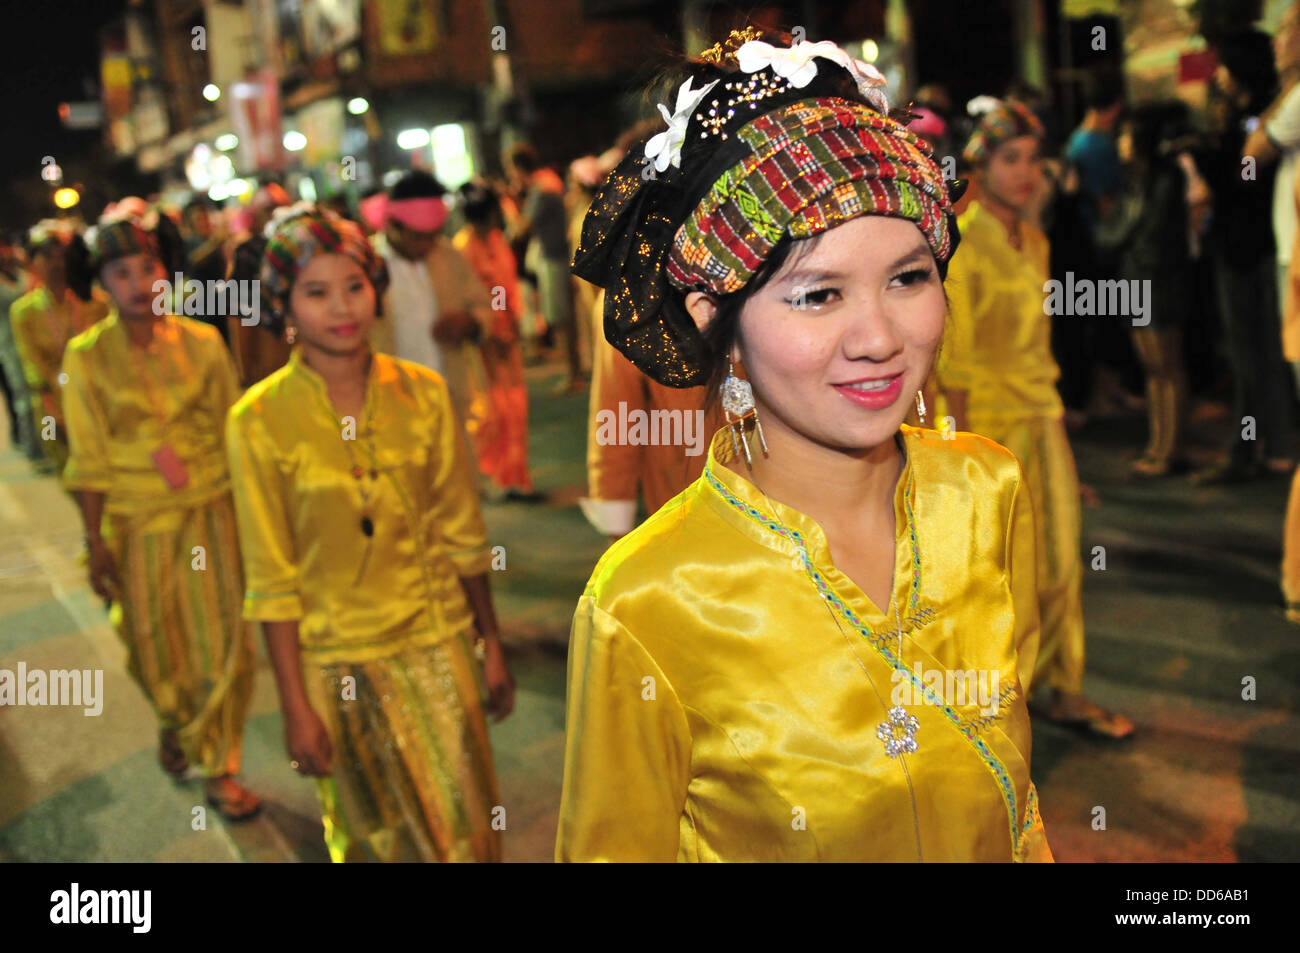 Loy Krathong une parade dans les rues de Chiang Mai dans le Nord de la Thaïlande Banque D'Images